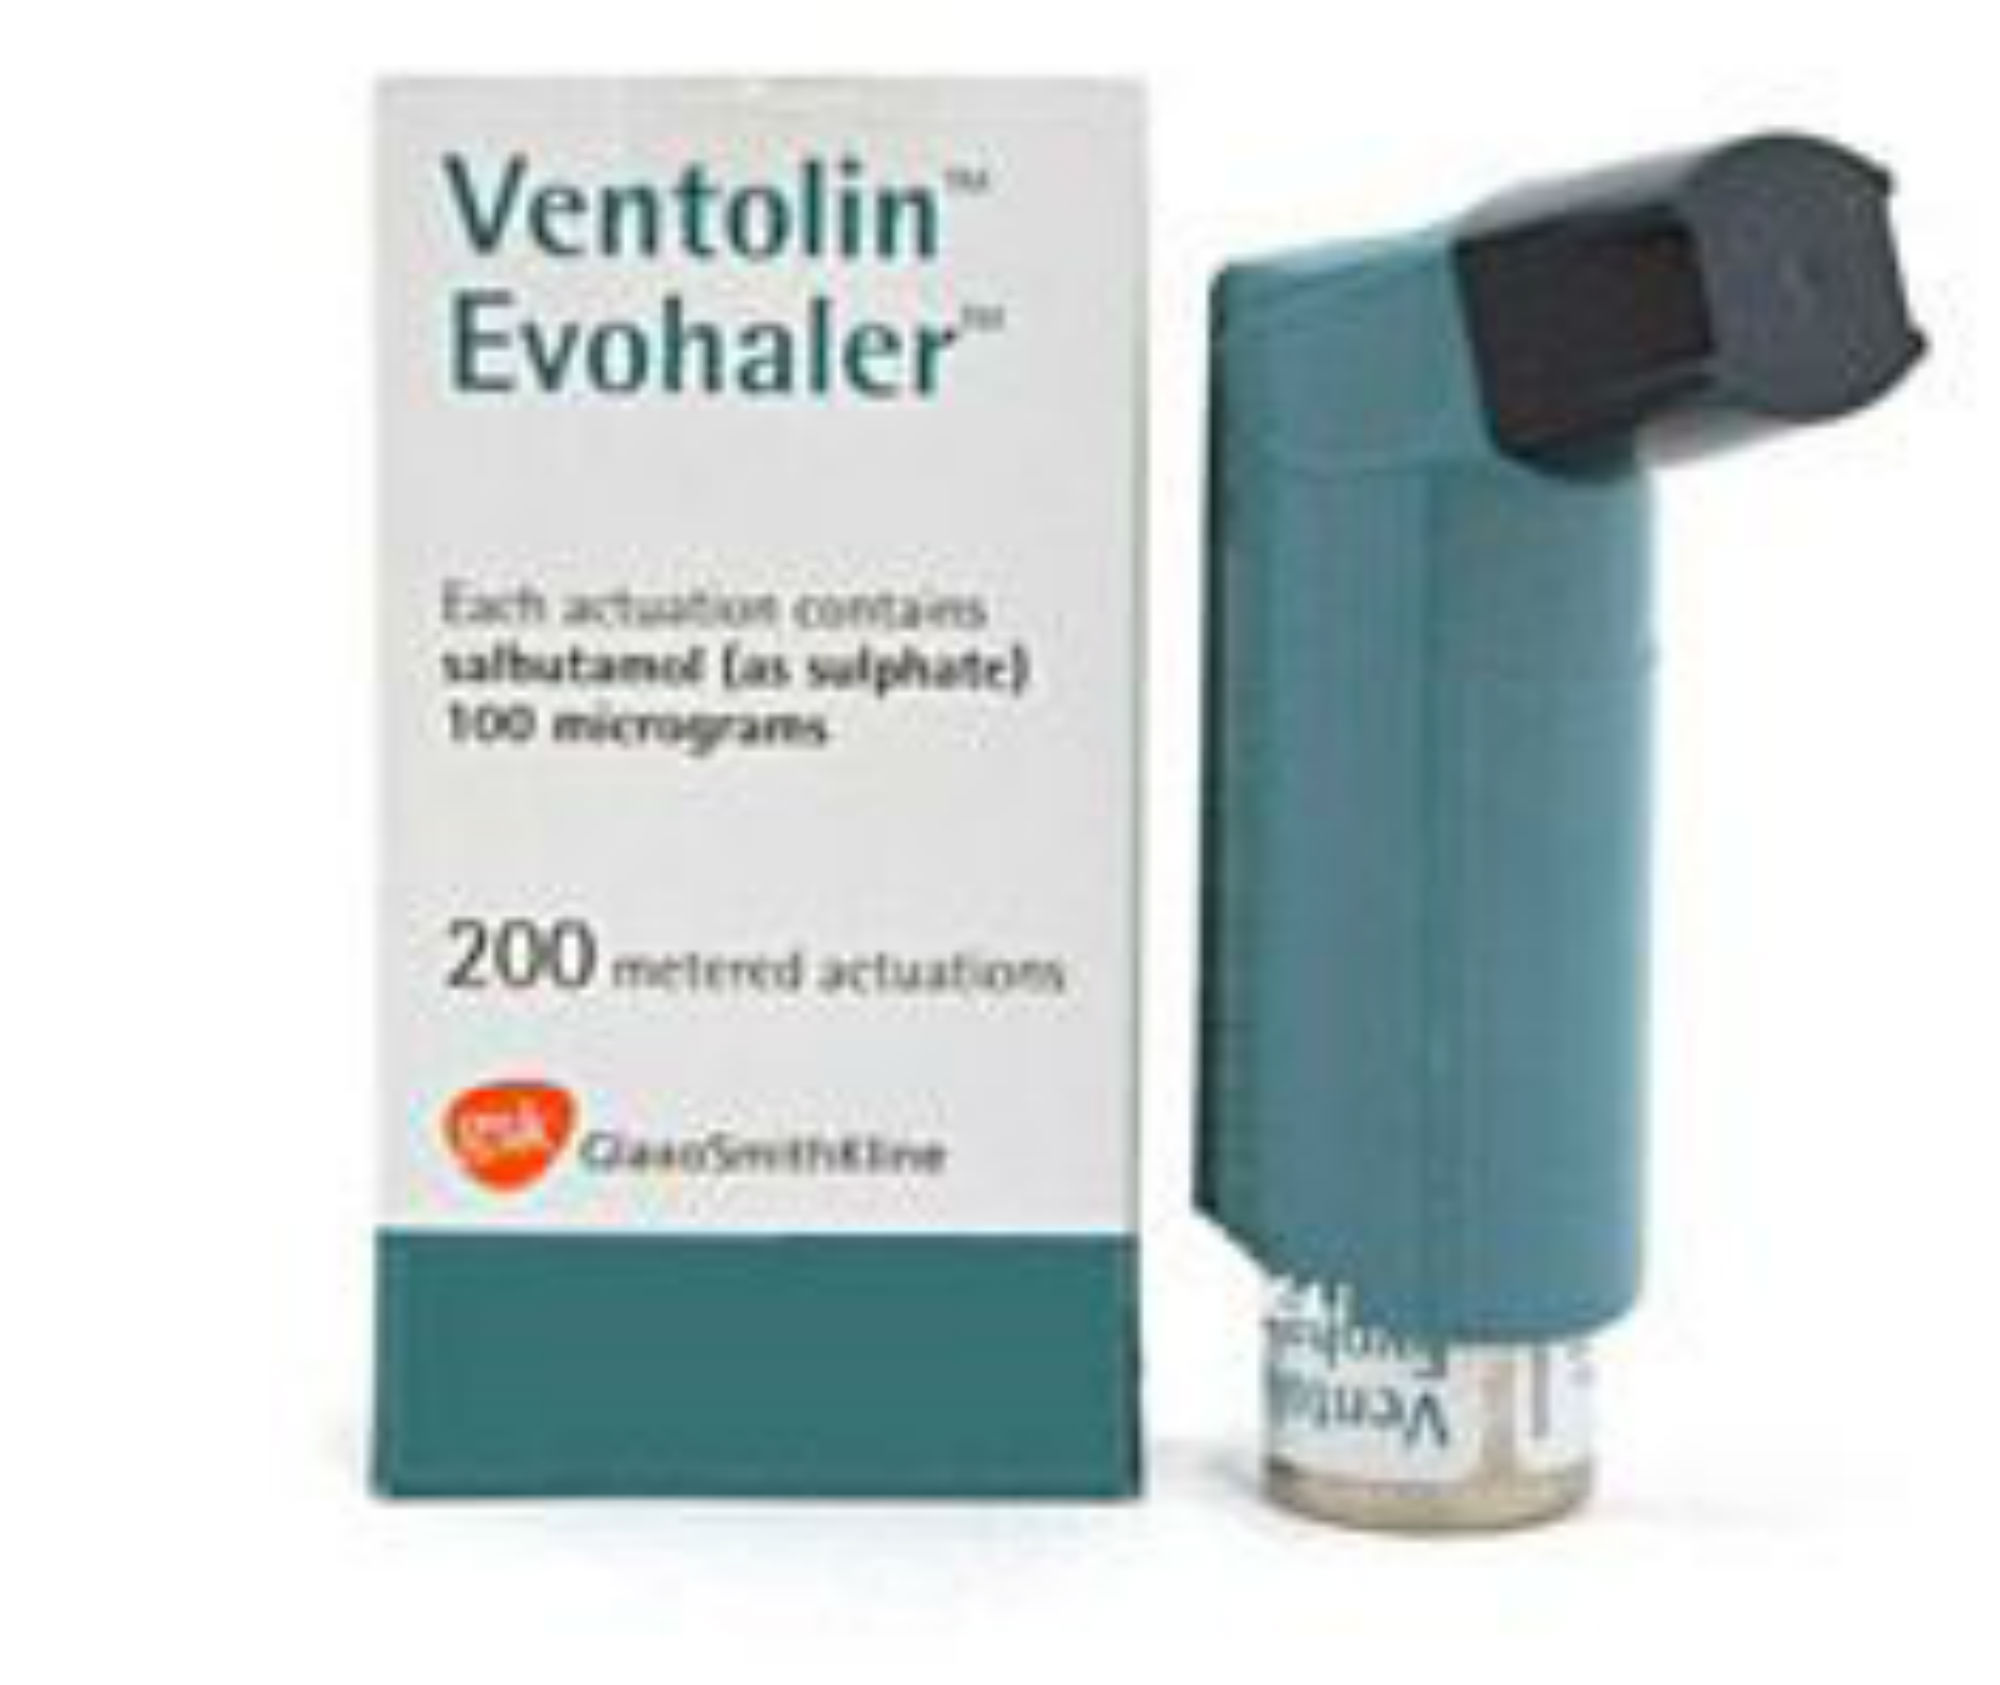 Buy Ventolin Inhalers Uk